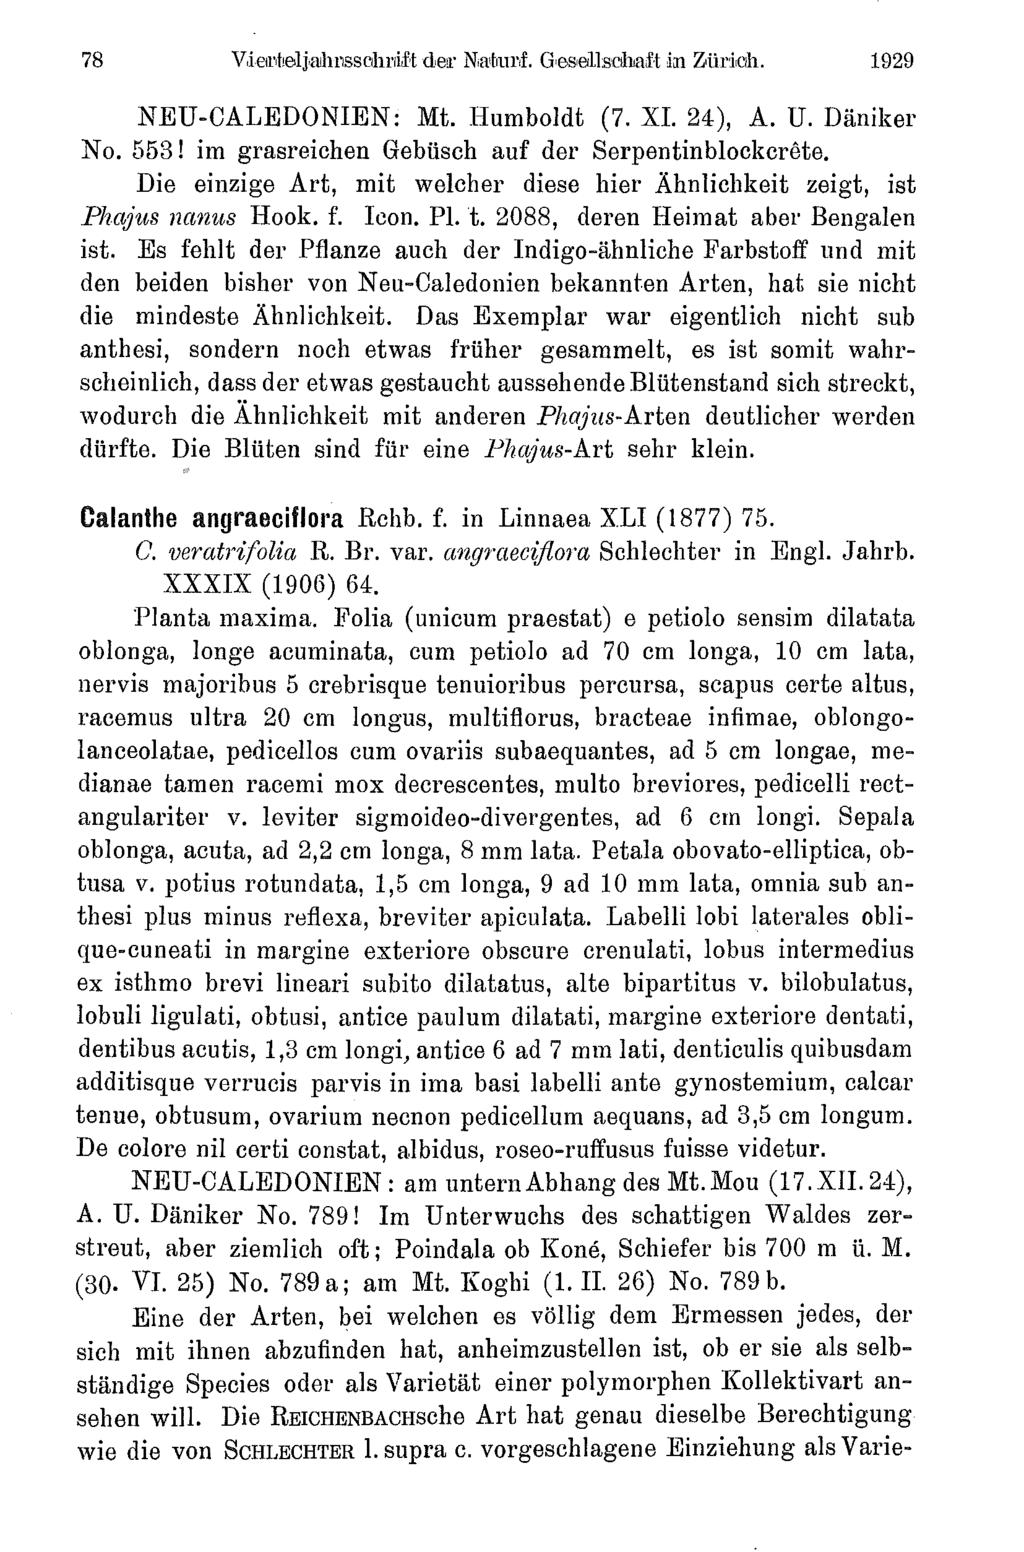 78 Vierfielj,ahrsschrri1t der Naturf. Gesellschaft in Züric. 1929 NEU-CALEDONIEN: Mt. Humboldt (7. XI. 24), A. U. Däniker No. 553! im grasreichen Gebüsch auf der Serpentinblockcrête.